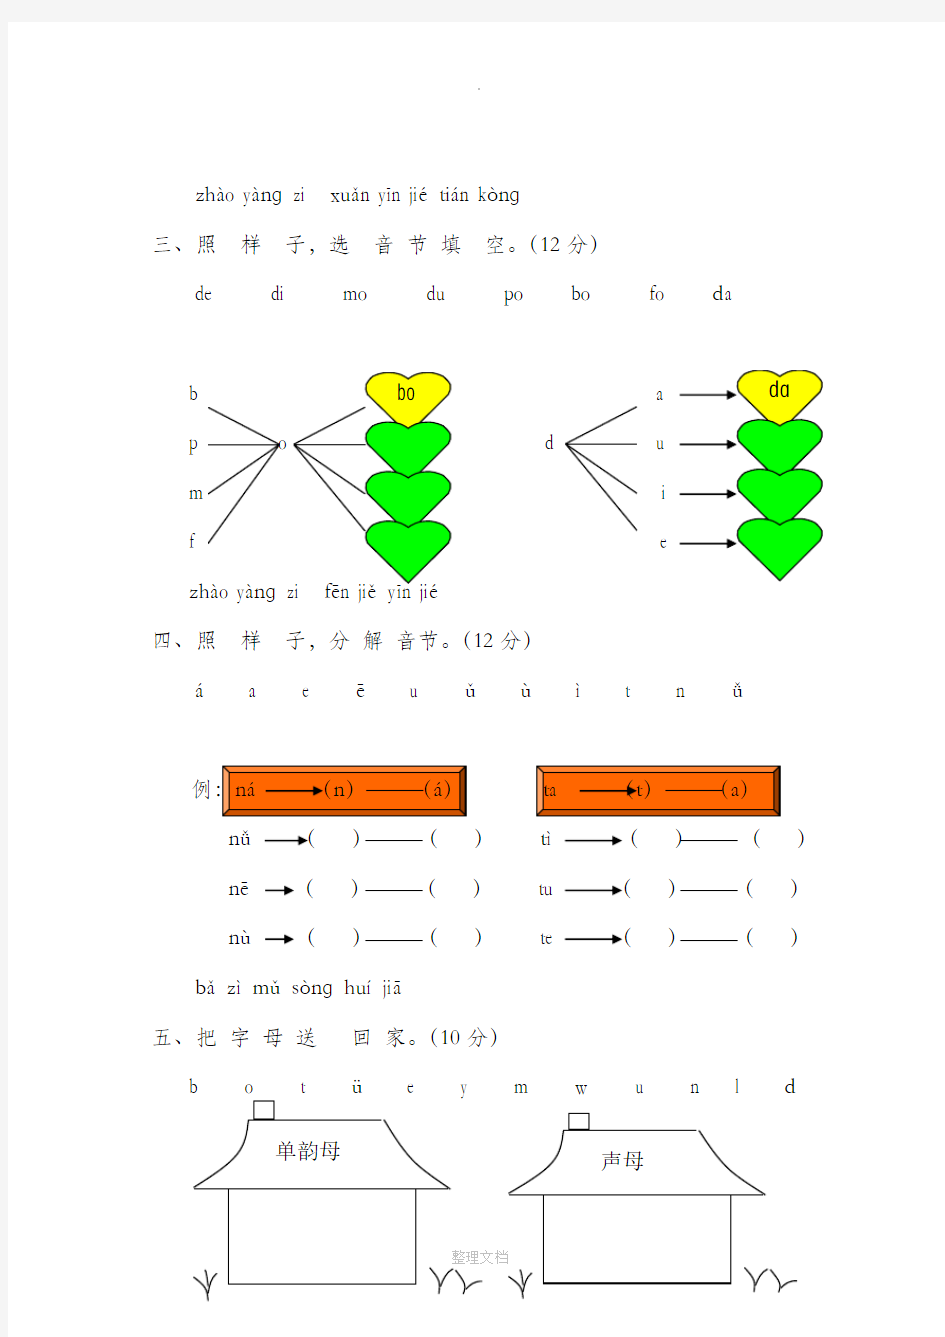 一年级汉语拼音测试题(全)